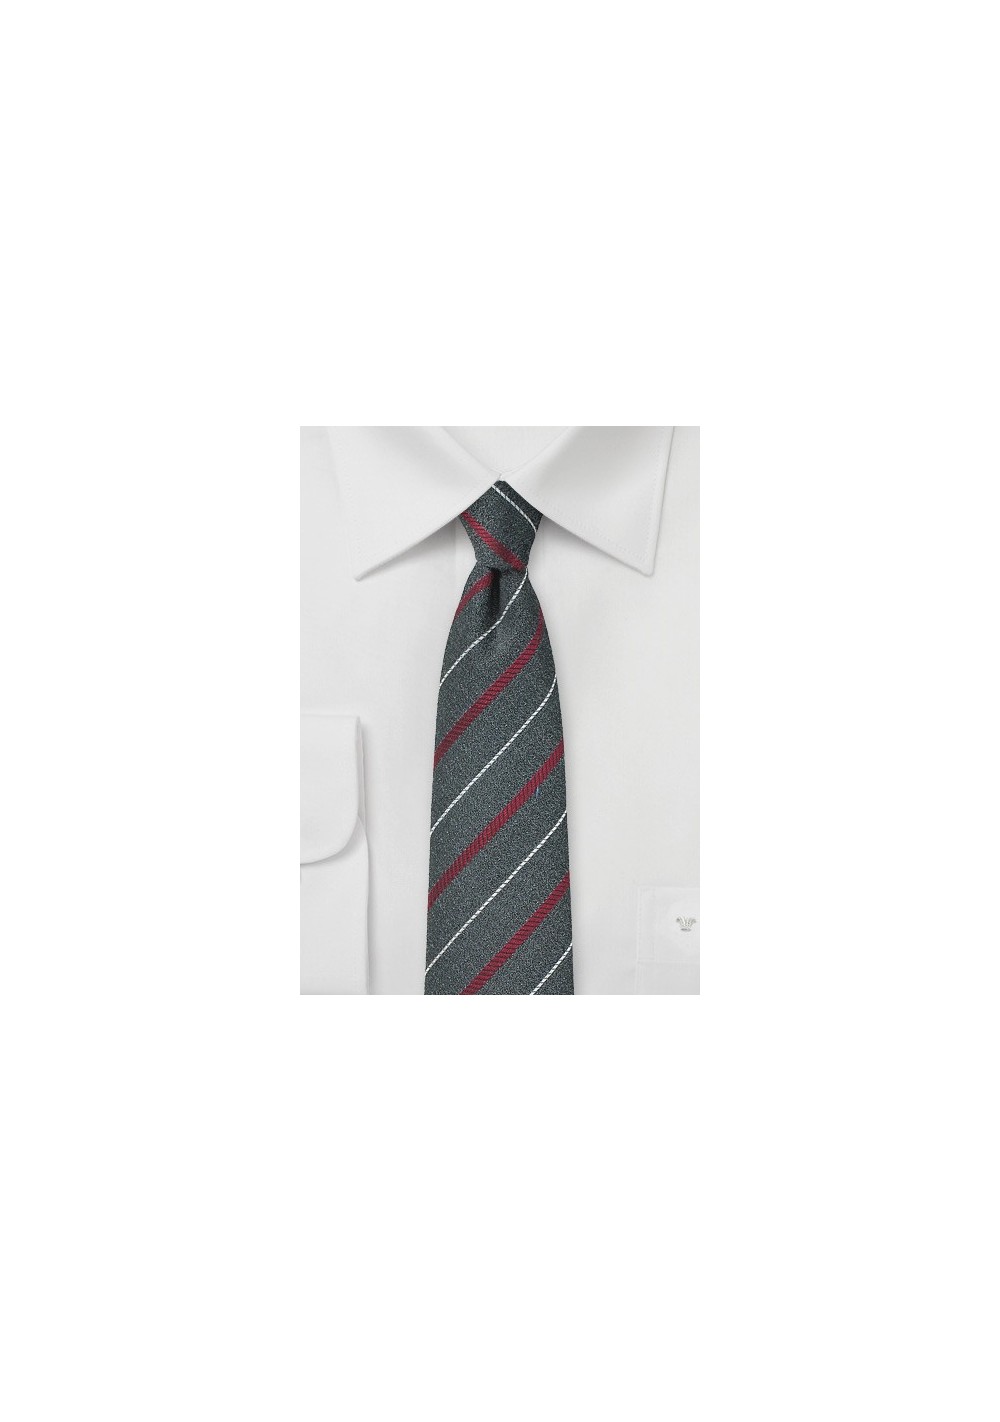 Graphite Gray Striped Skinny Tie